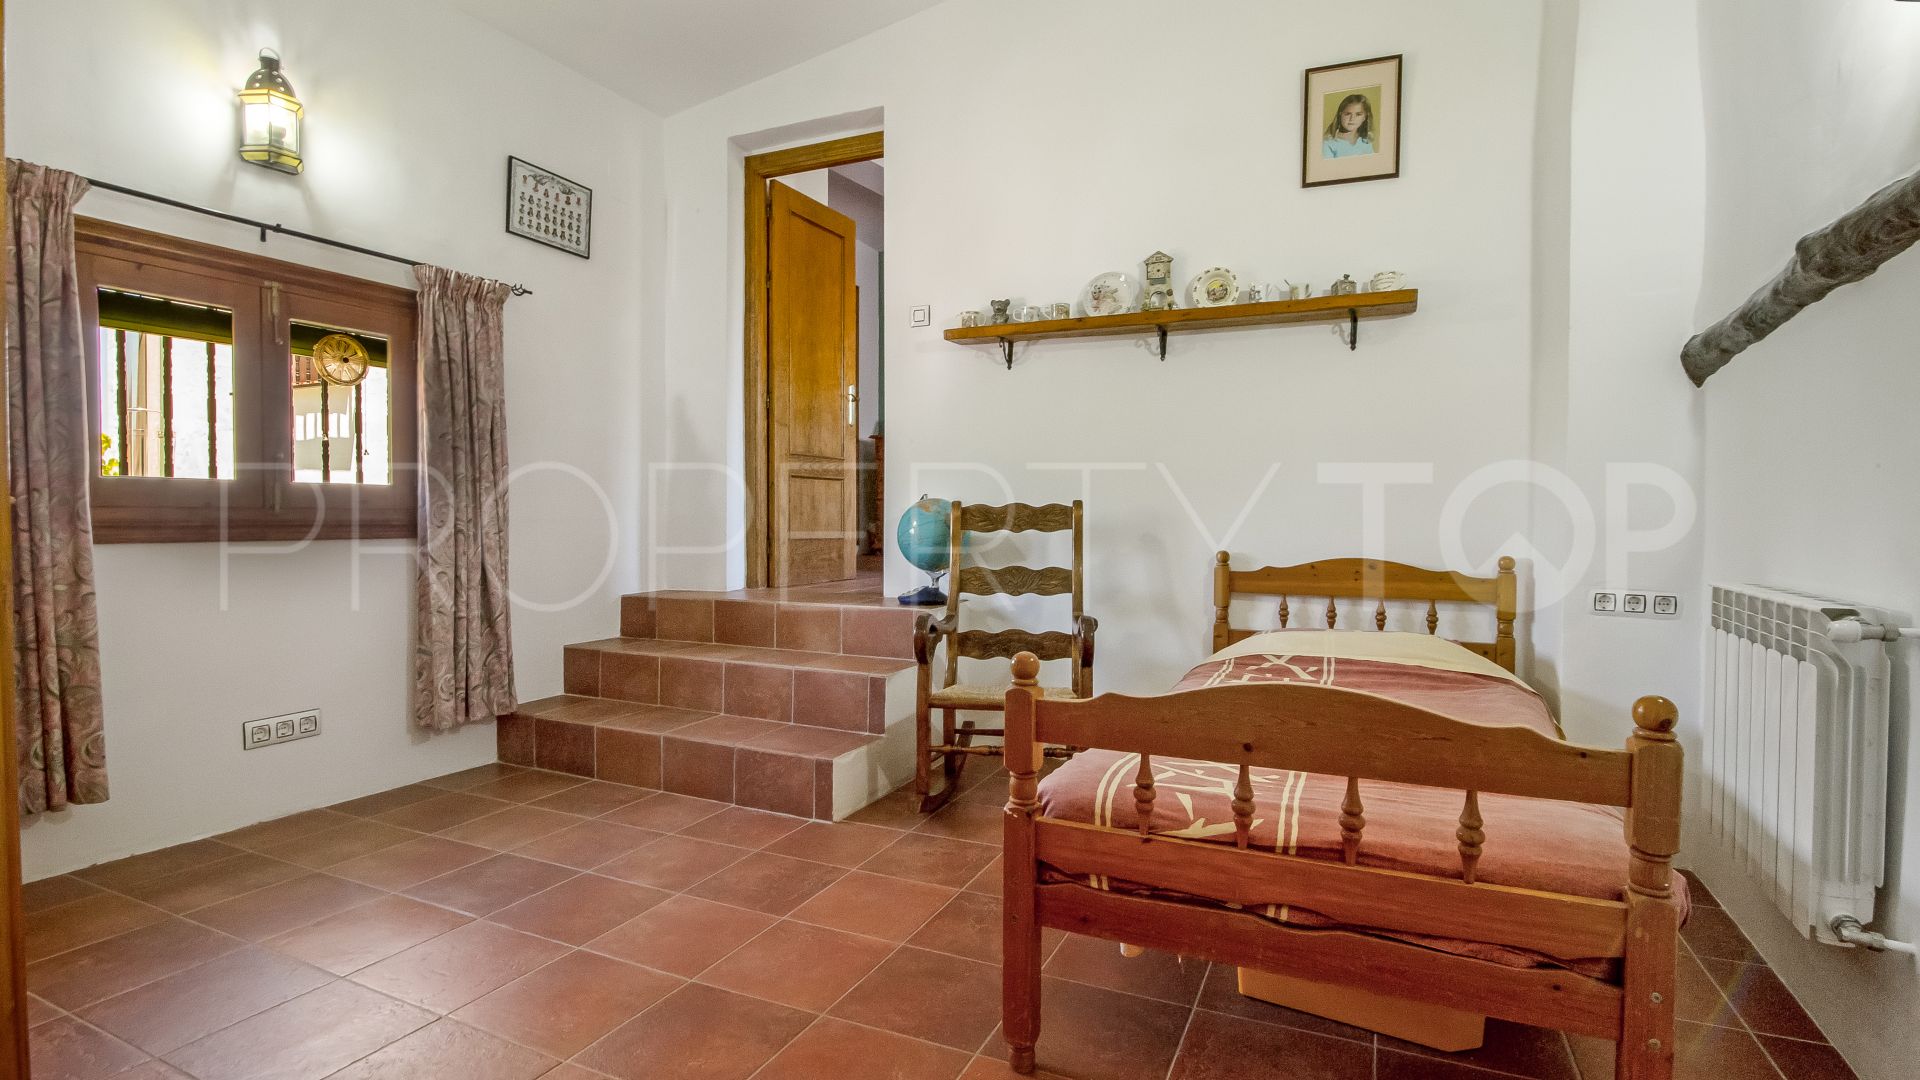 12 bedrooms villa in Iznajar for sale